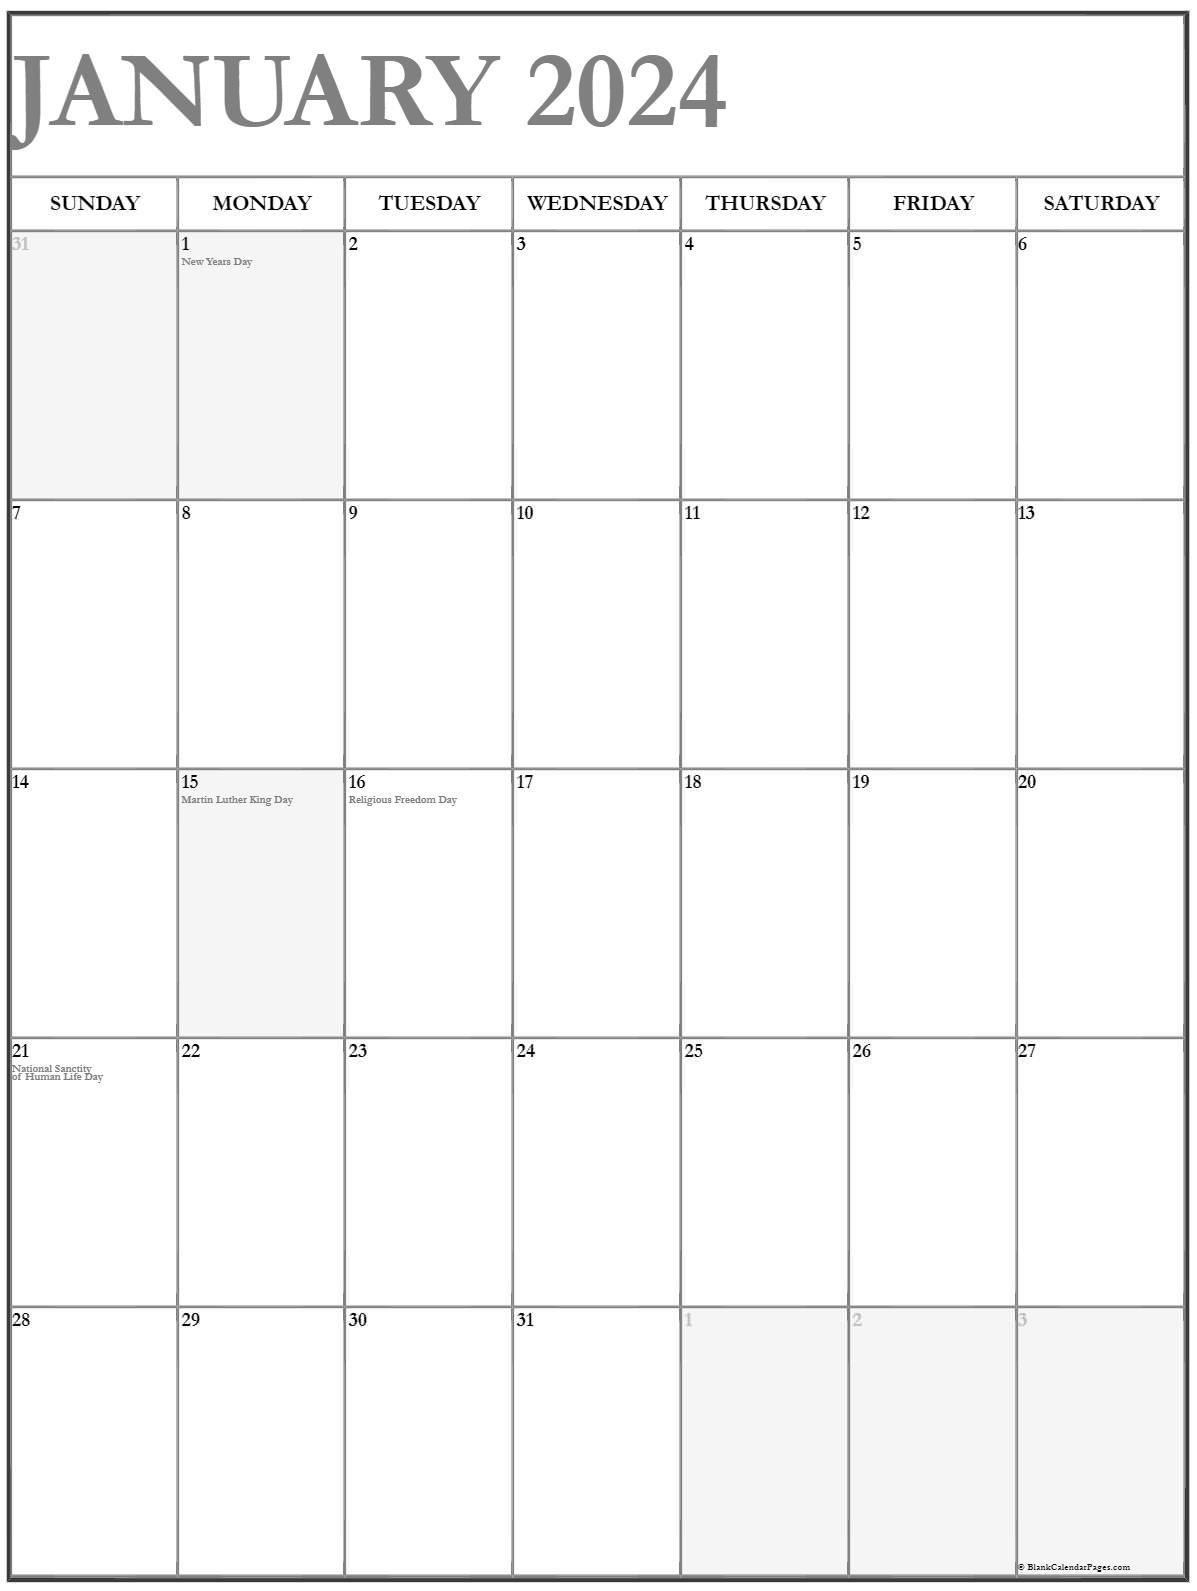 jan-2023-calendar-in-excel-pelajaran